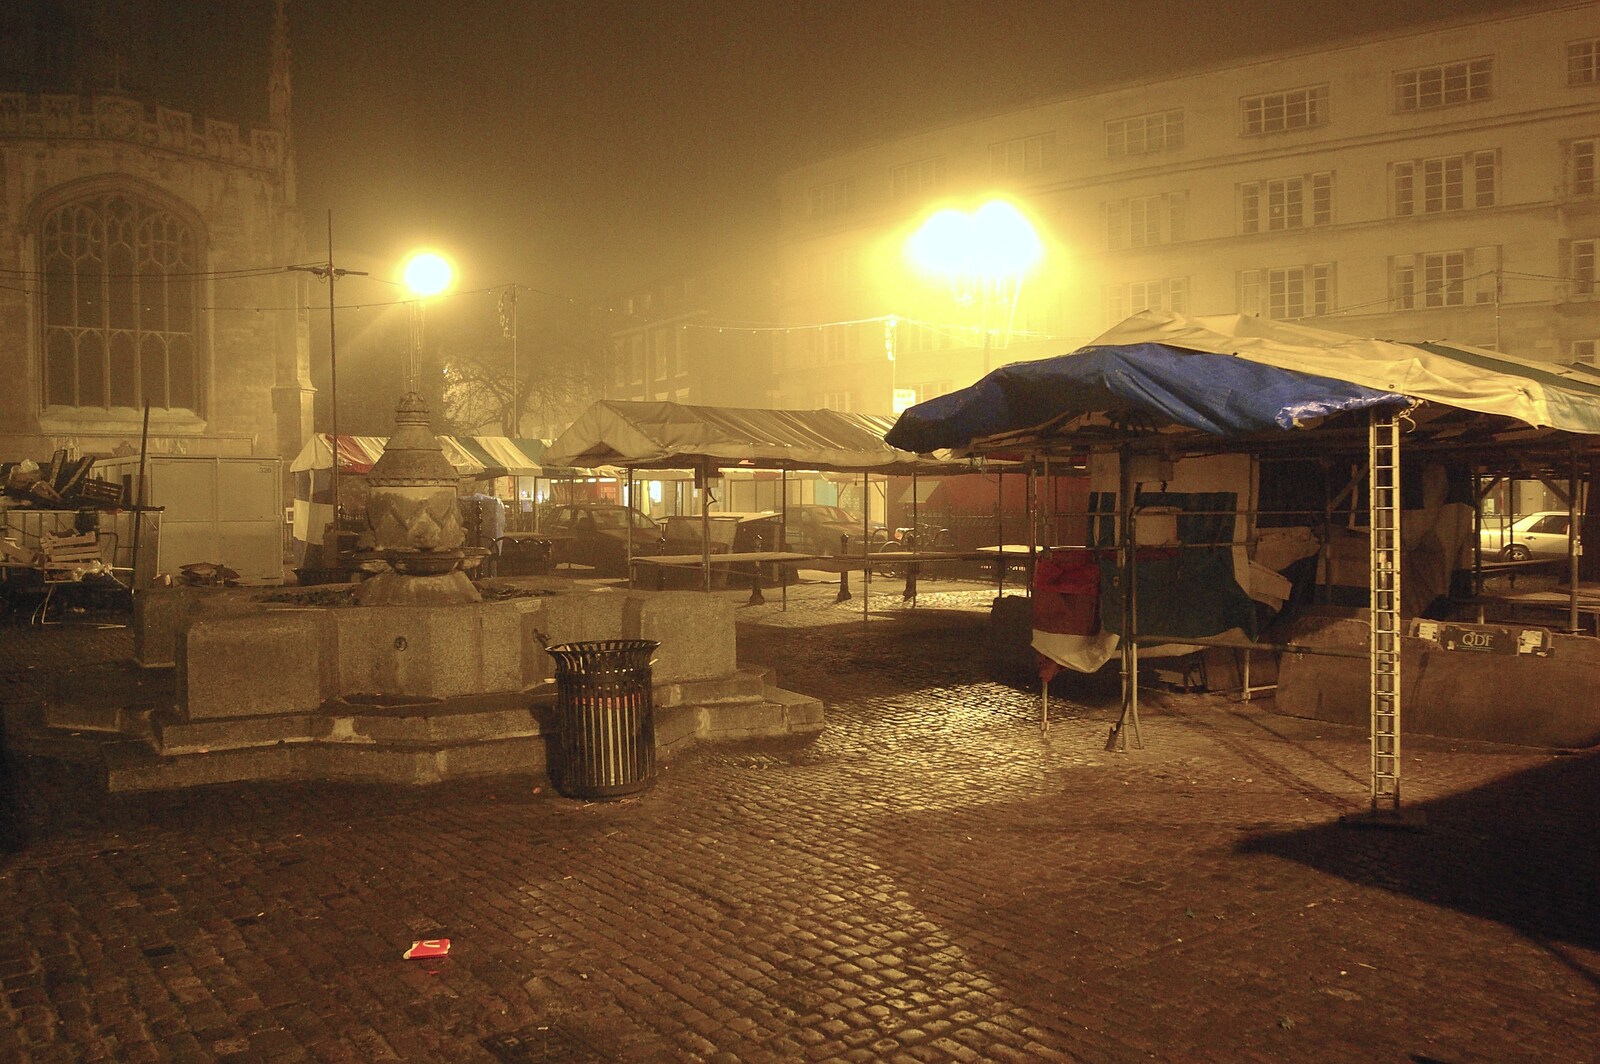 Deserted market stalls lurk in the fog from Taptu's Christmas Bash, La Raza, Cambridge - 21st December 2007